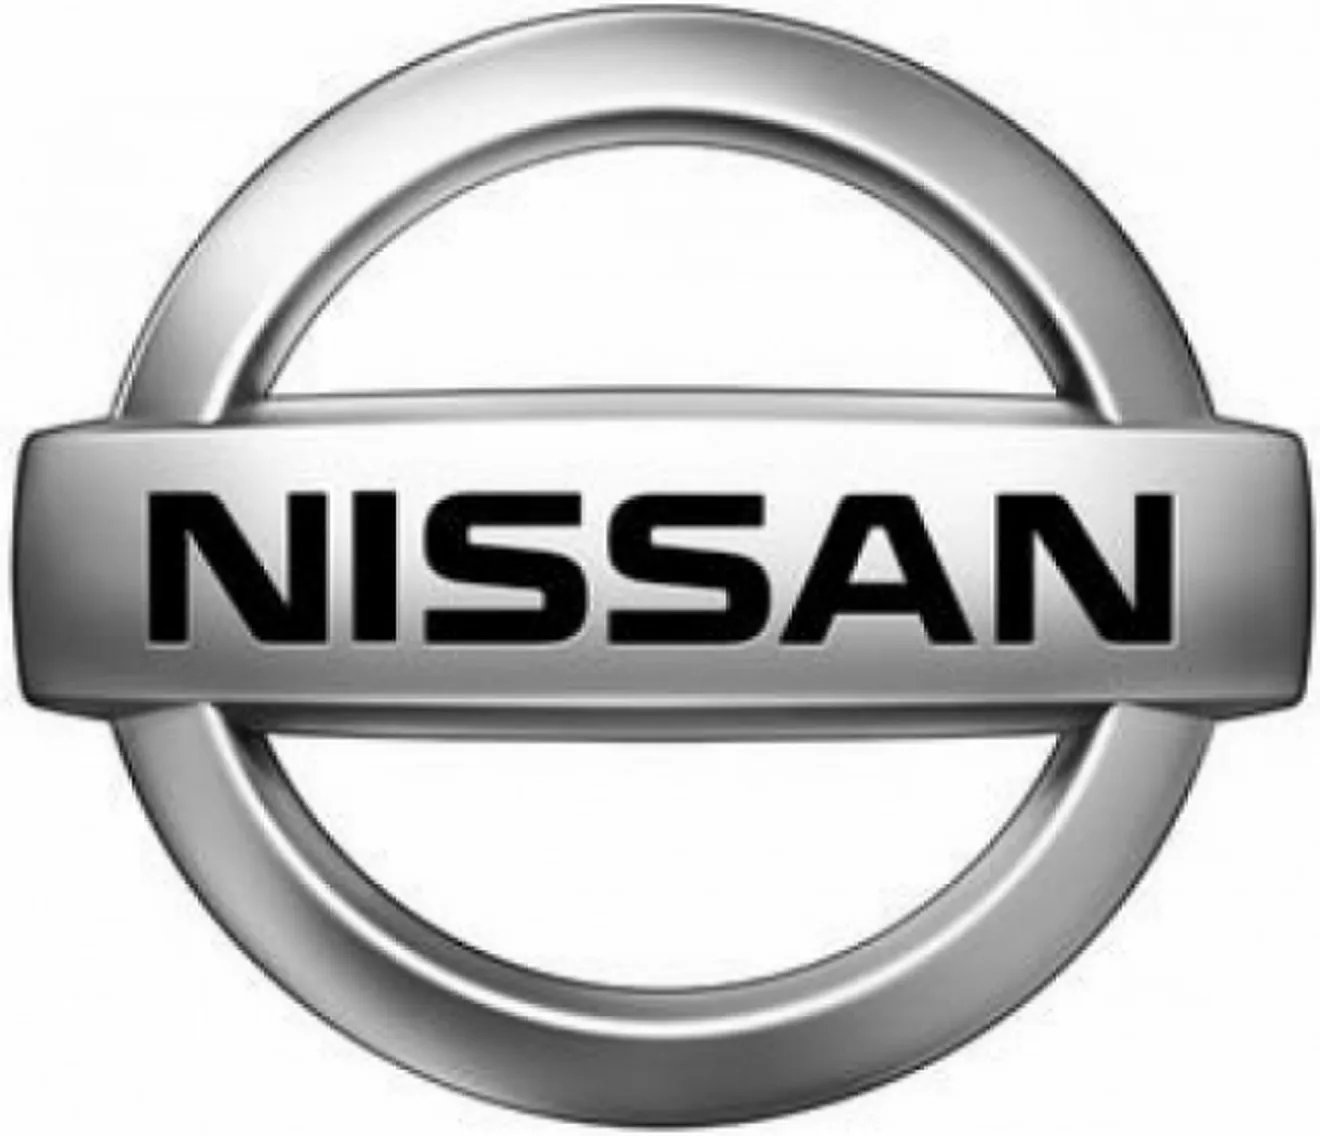 Nissan fabricaría coches eléctricos en el Reino unido y no en España, ¿qué pasa con los brotes verdes?